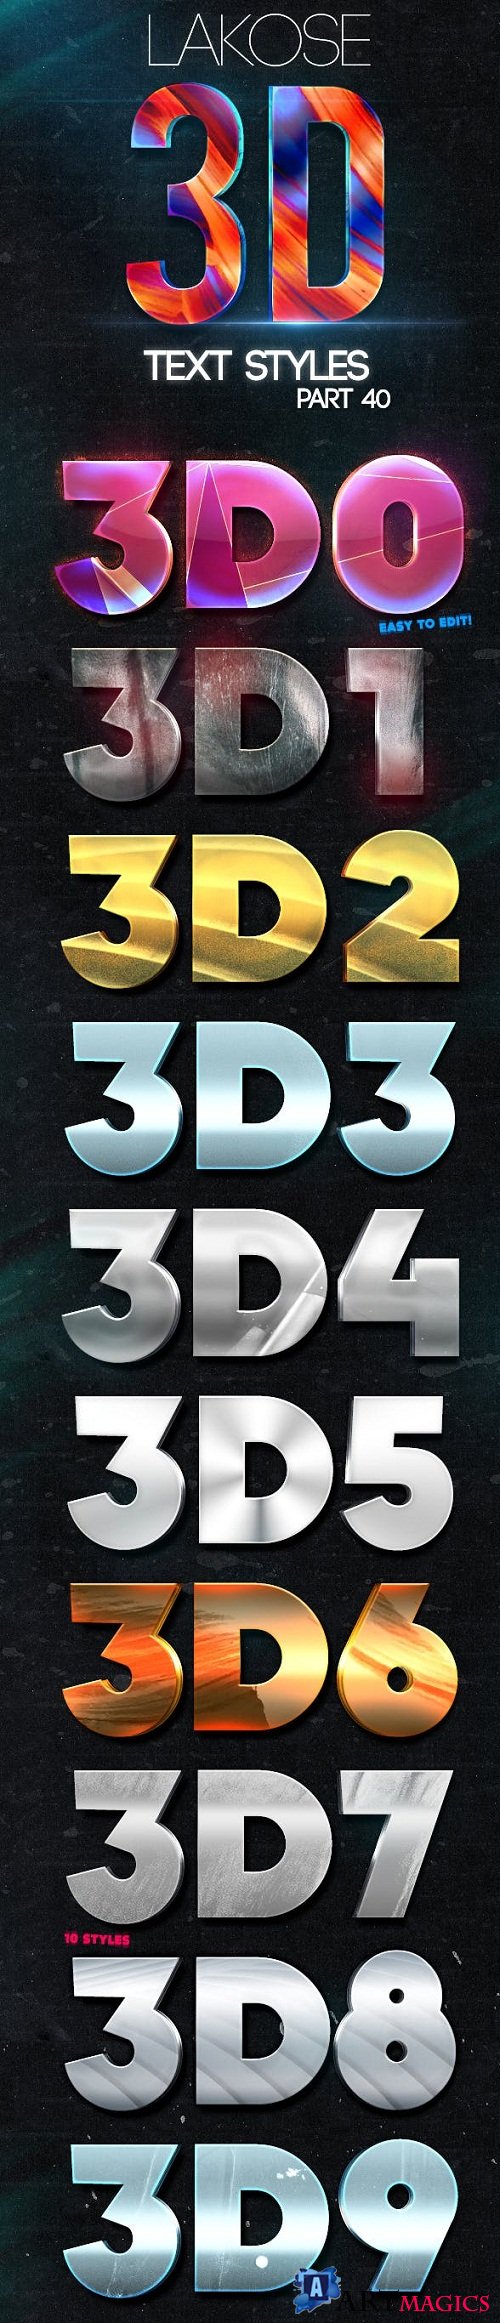 Lakose 3D Text Styles Part 40 - 22664390